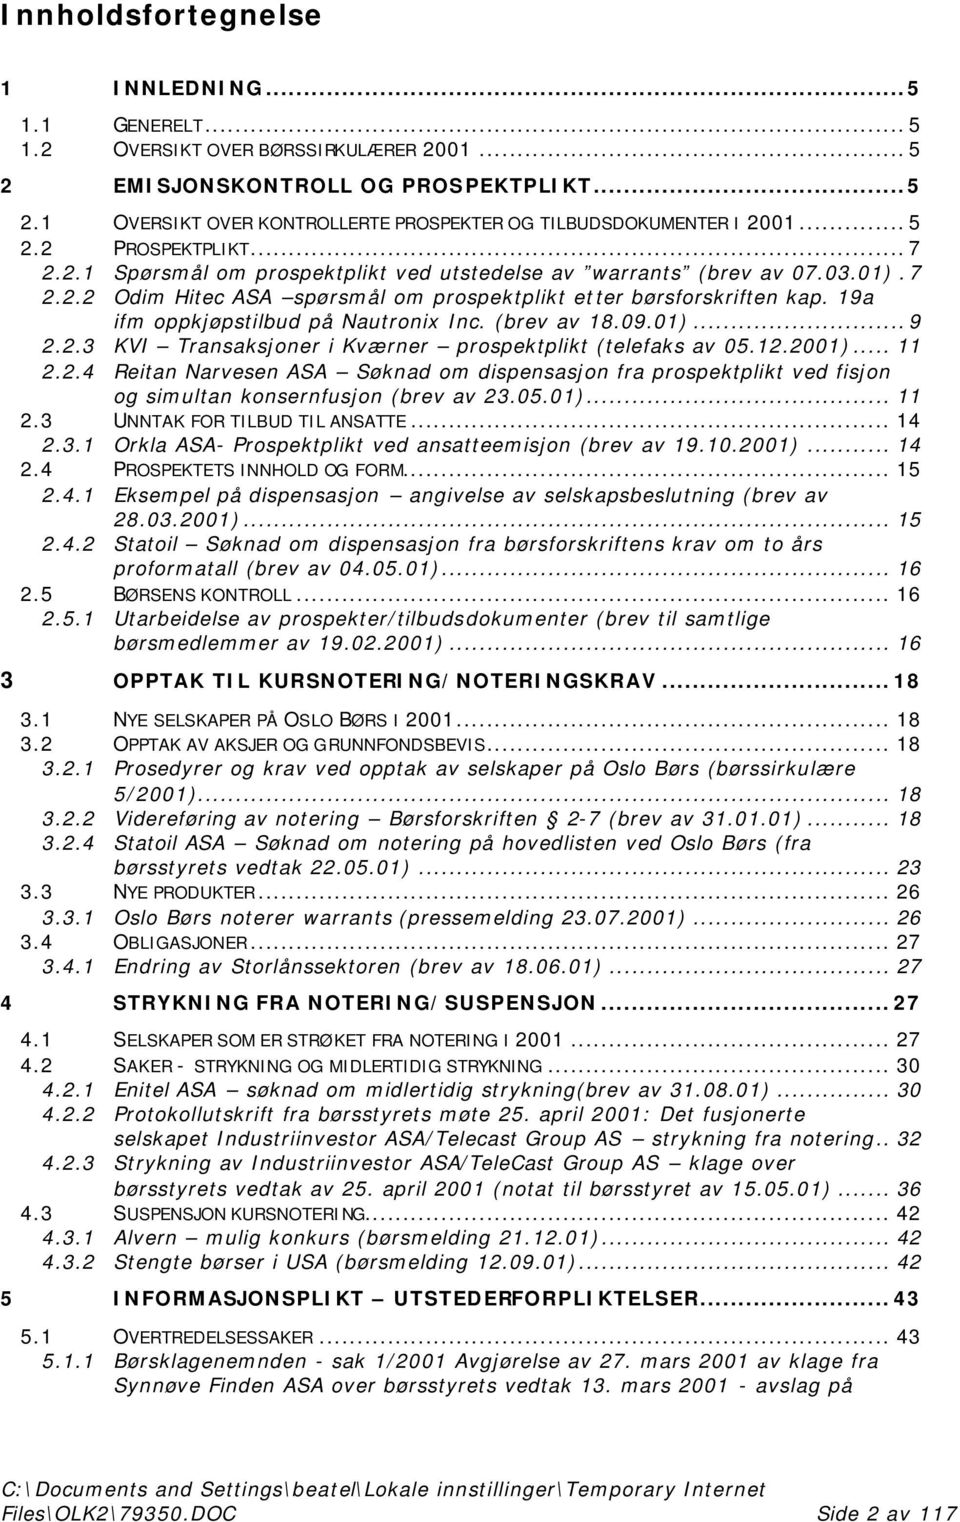 19a ifm oppkjøpstilbud på Nautronix Inc. (brev av 18.09.01)...9 2.2.3 KVI Transaksjoner i Kværner prospektplikt (telefaks av 05.12.2001)... 11 2.2.4 Reitan Narvesen ASA Søknad om dispensasjon fra prospektplikt ved fisjon og simultan konsernfusjon (brev av 23.